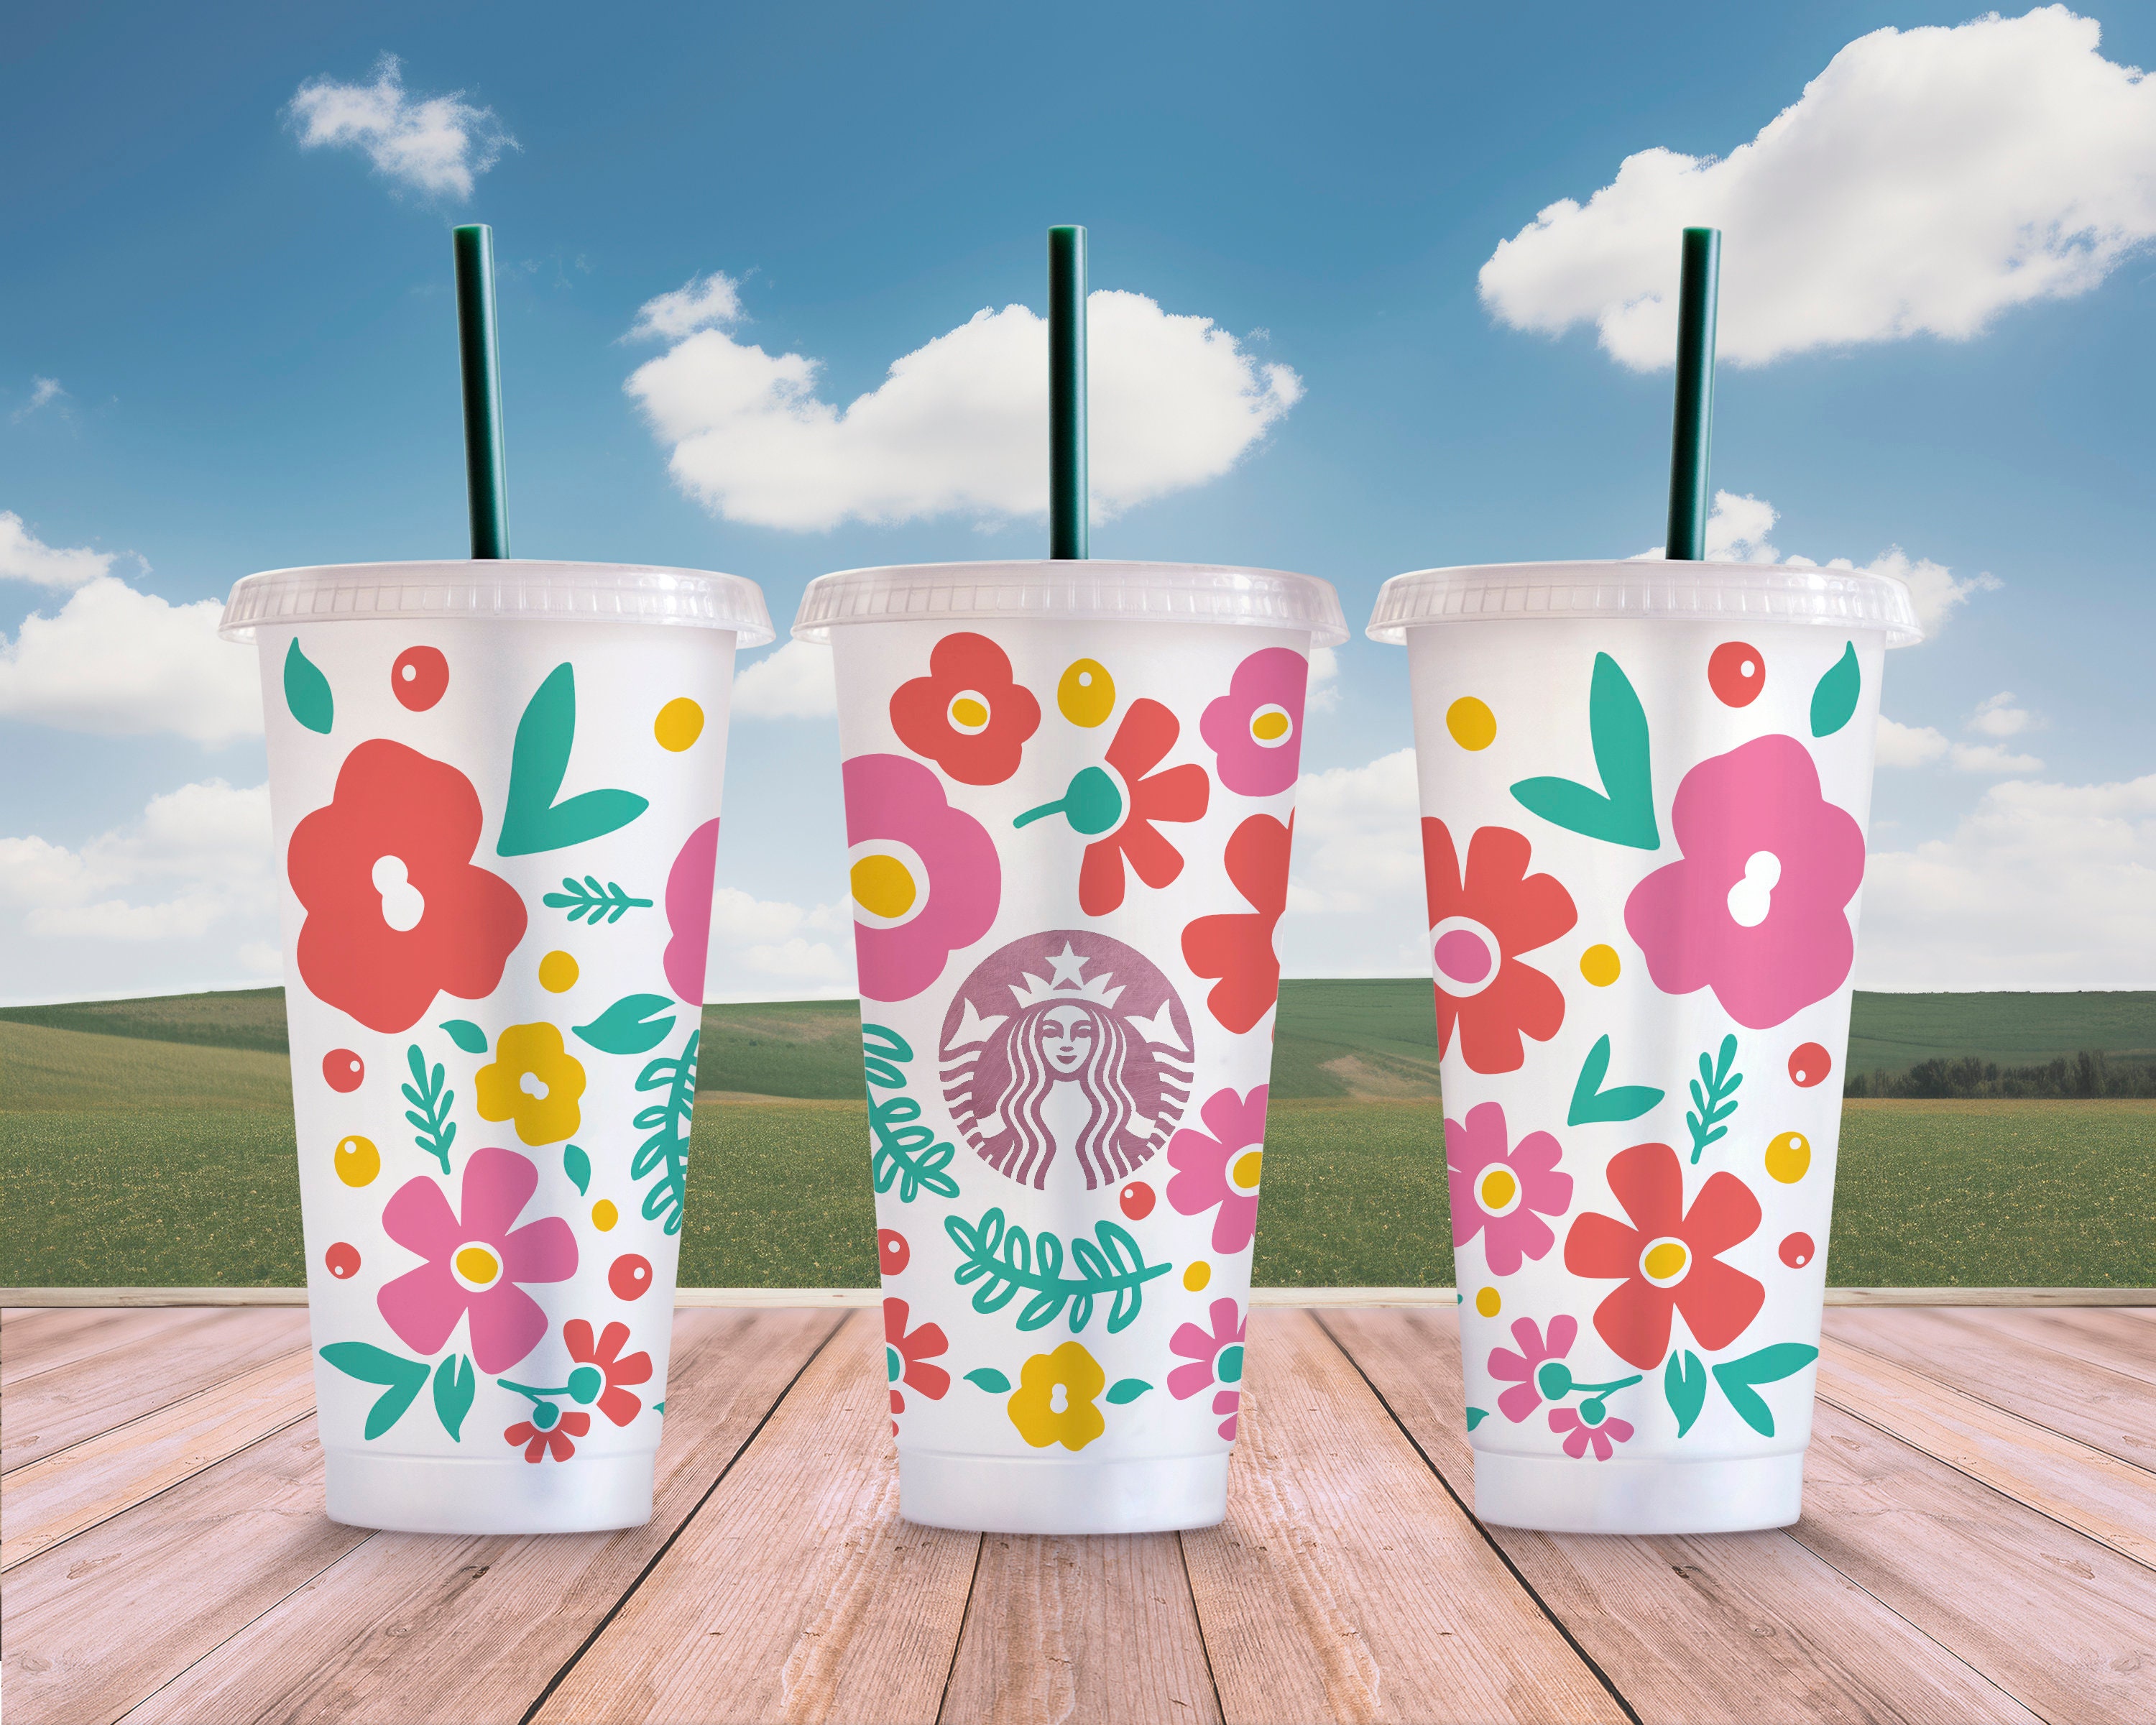 Starbucks China 2023 Summer wildflowers yellow Flower lid straw glass